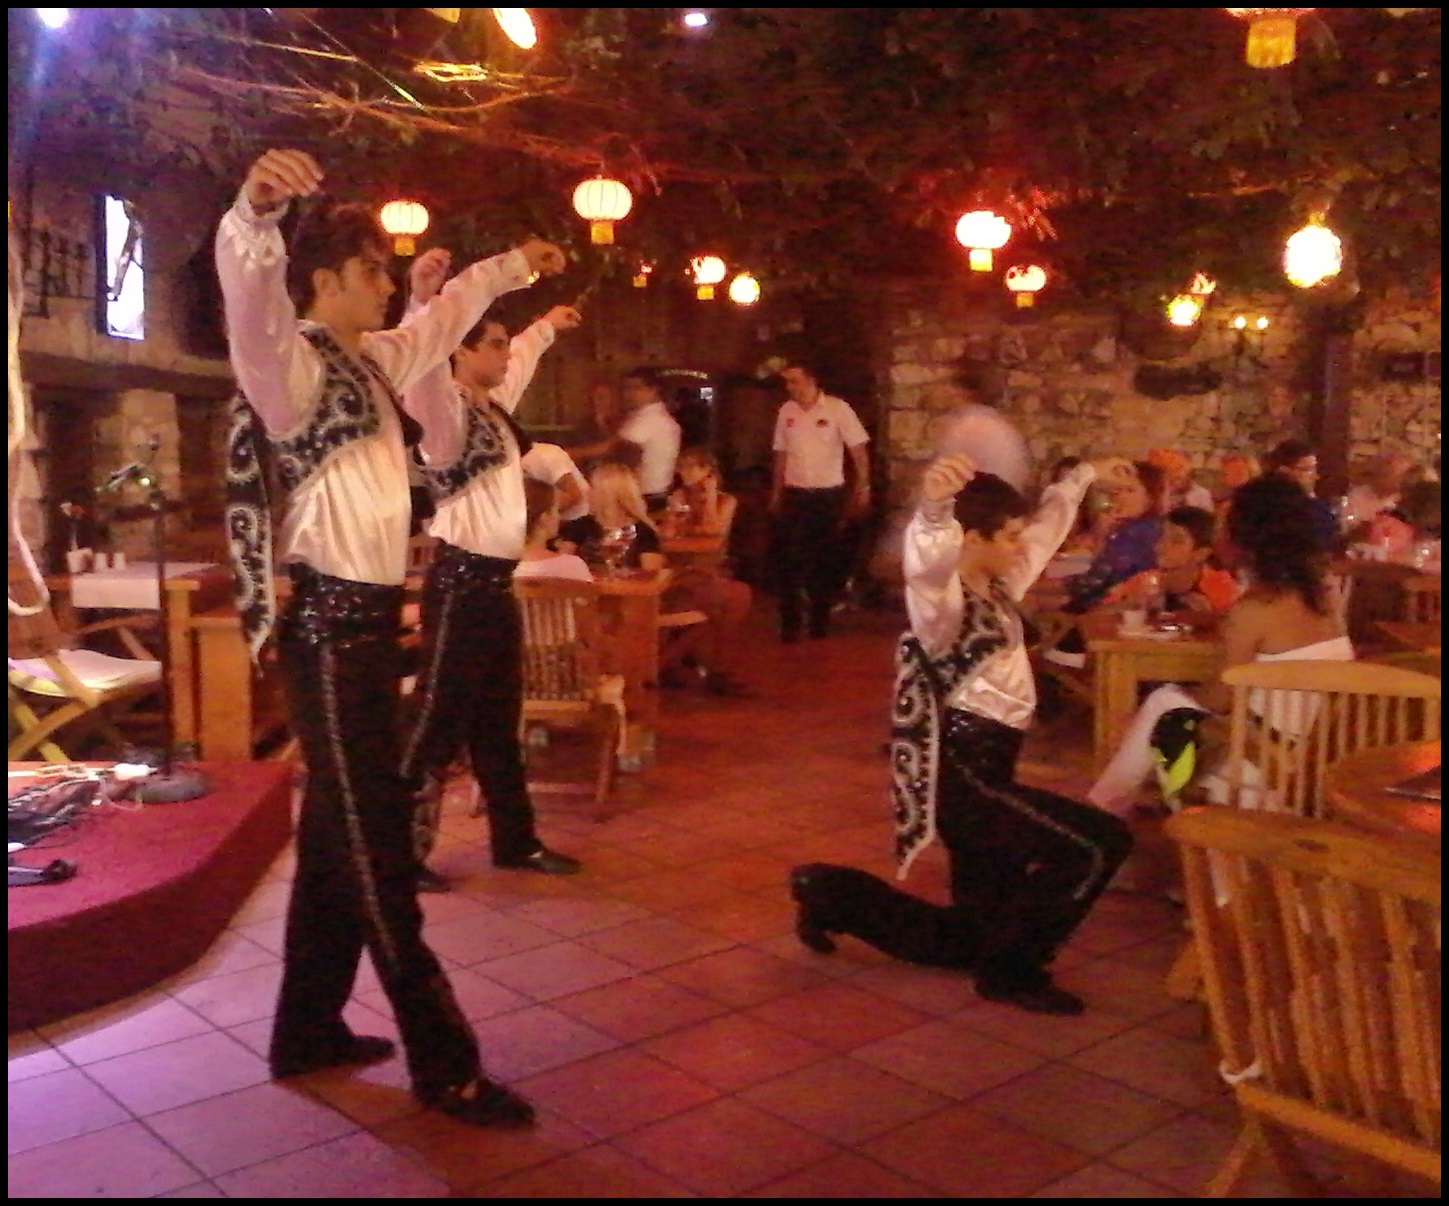 Cultural Turkey – Folk Dancing